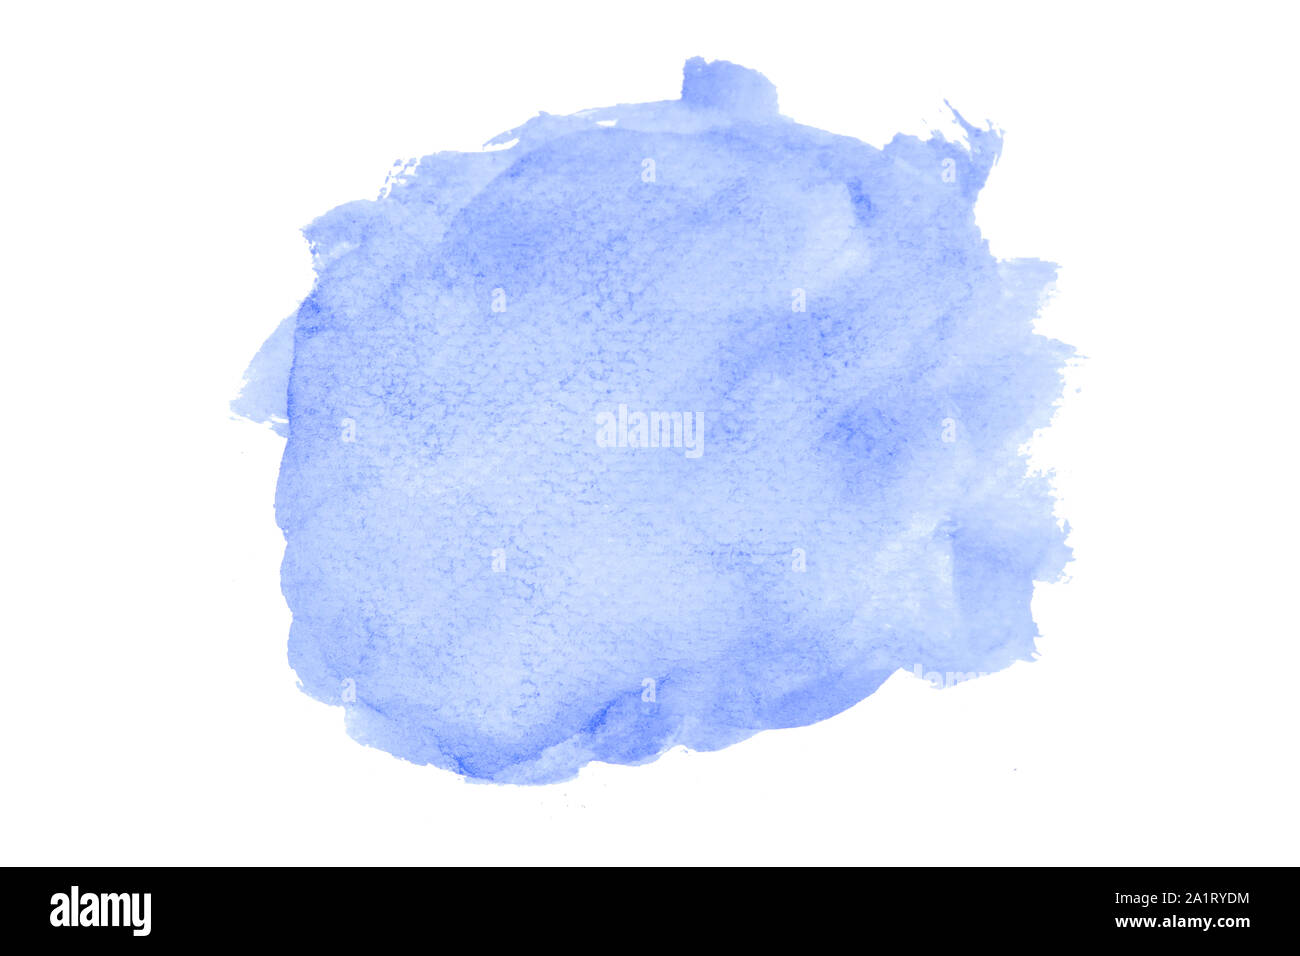 Azul oscuro, azul marino acuarela textura dibujados a mano con trazos de pincel aislado sobre fondo blanco con trazado de recorte. Foto de stock